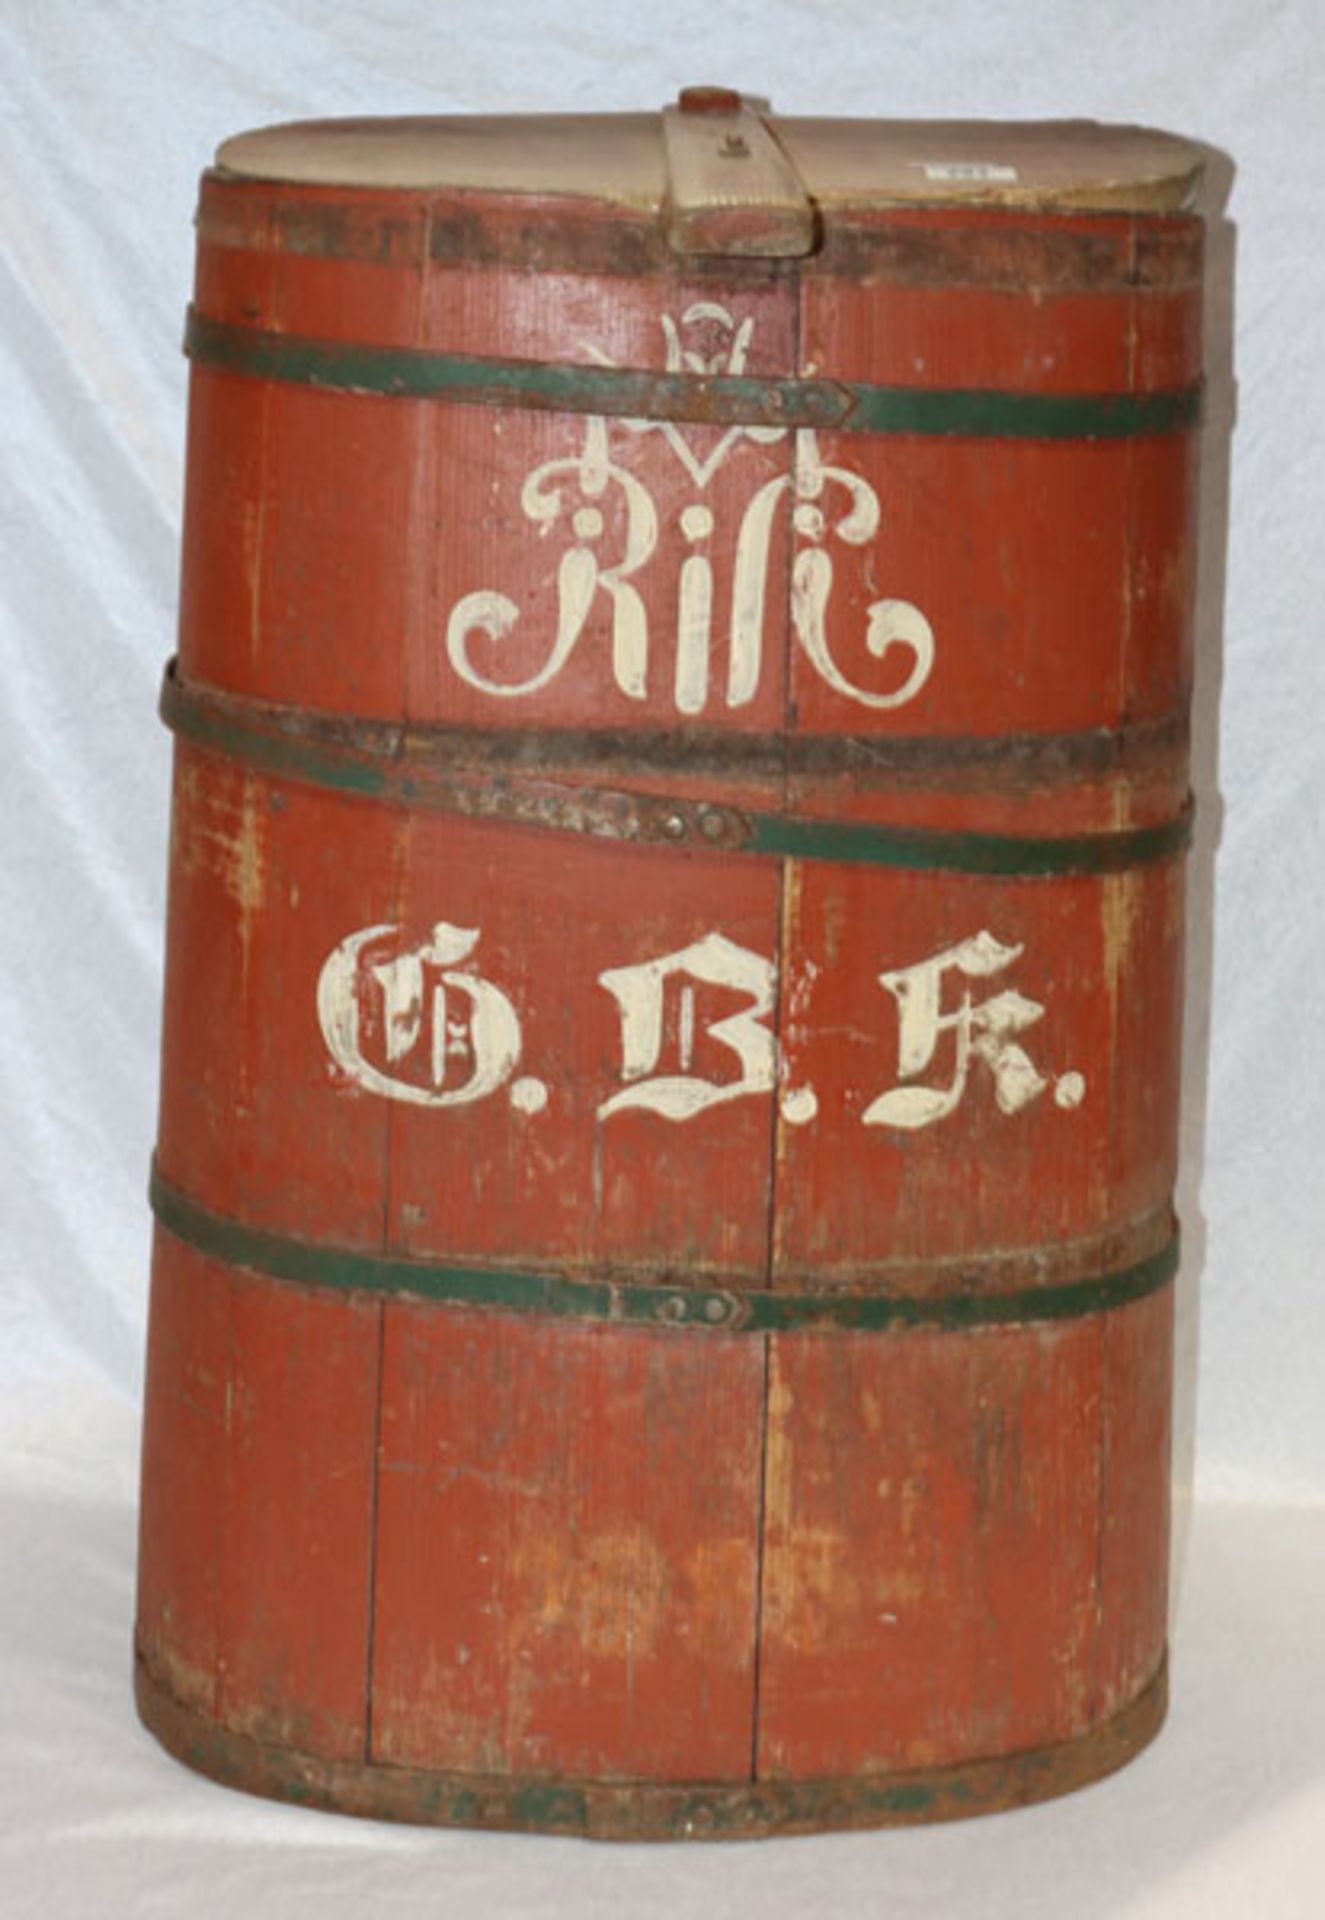 Deko Holz Weinlesekorb, H 78 cm, B 56 cm, T 27 cm, Alters- und Gebrauchsspuren, Trocknungsrisse